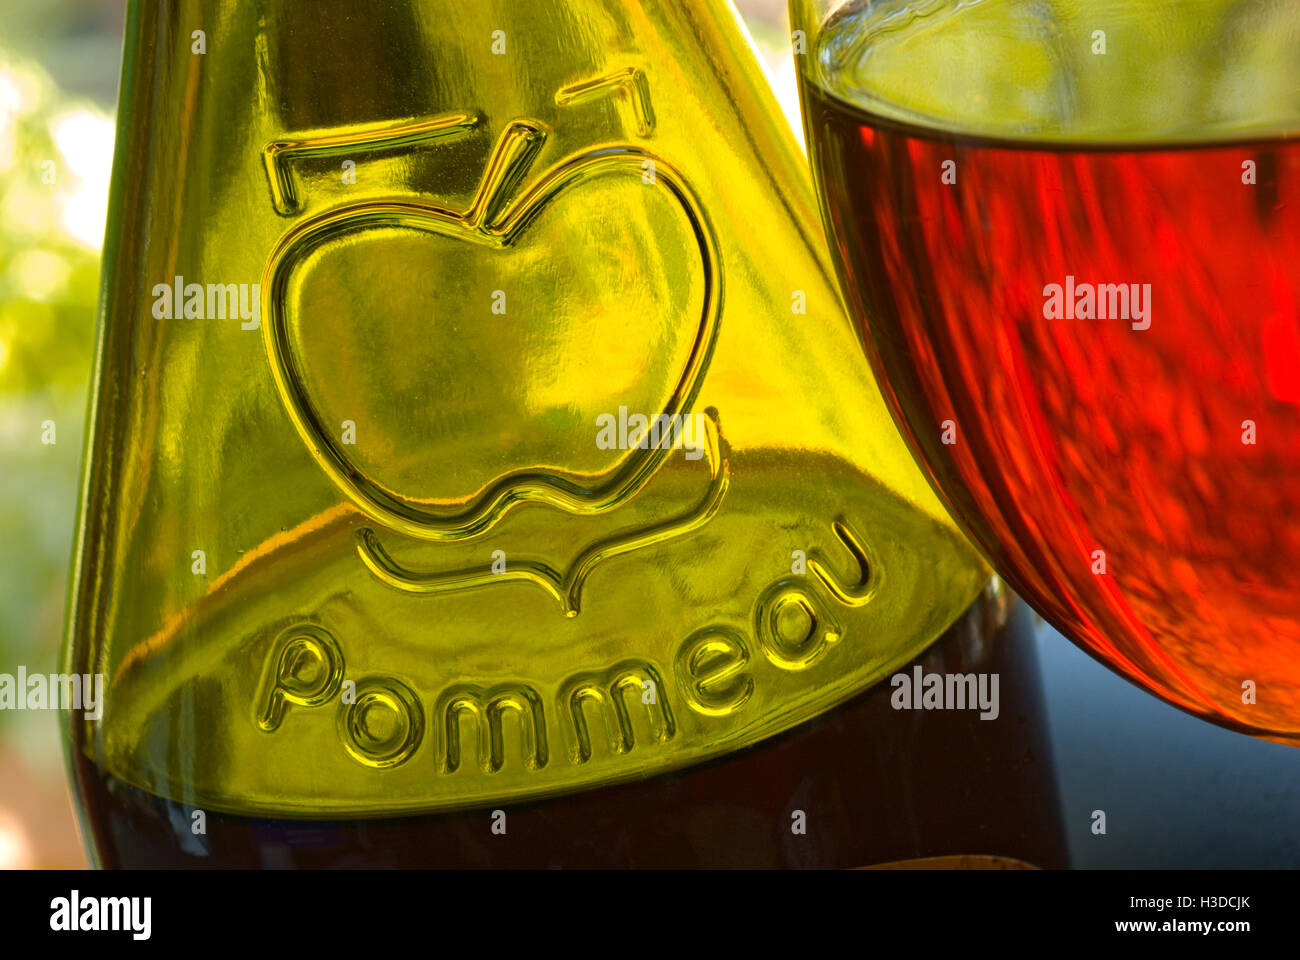 Fermer la vue sur la bouteille et verre de Pommeau de Normandie faite avec du jus de pomme et Calvados en terrasse situation le jardin Banque D'Images